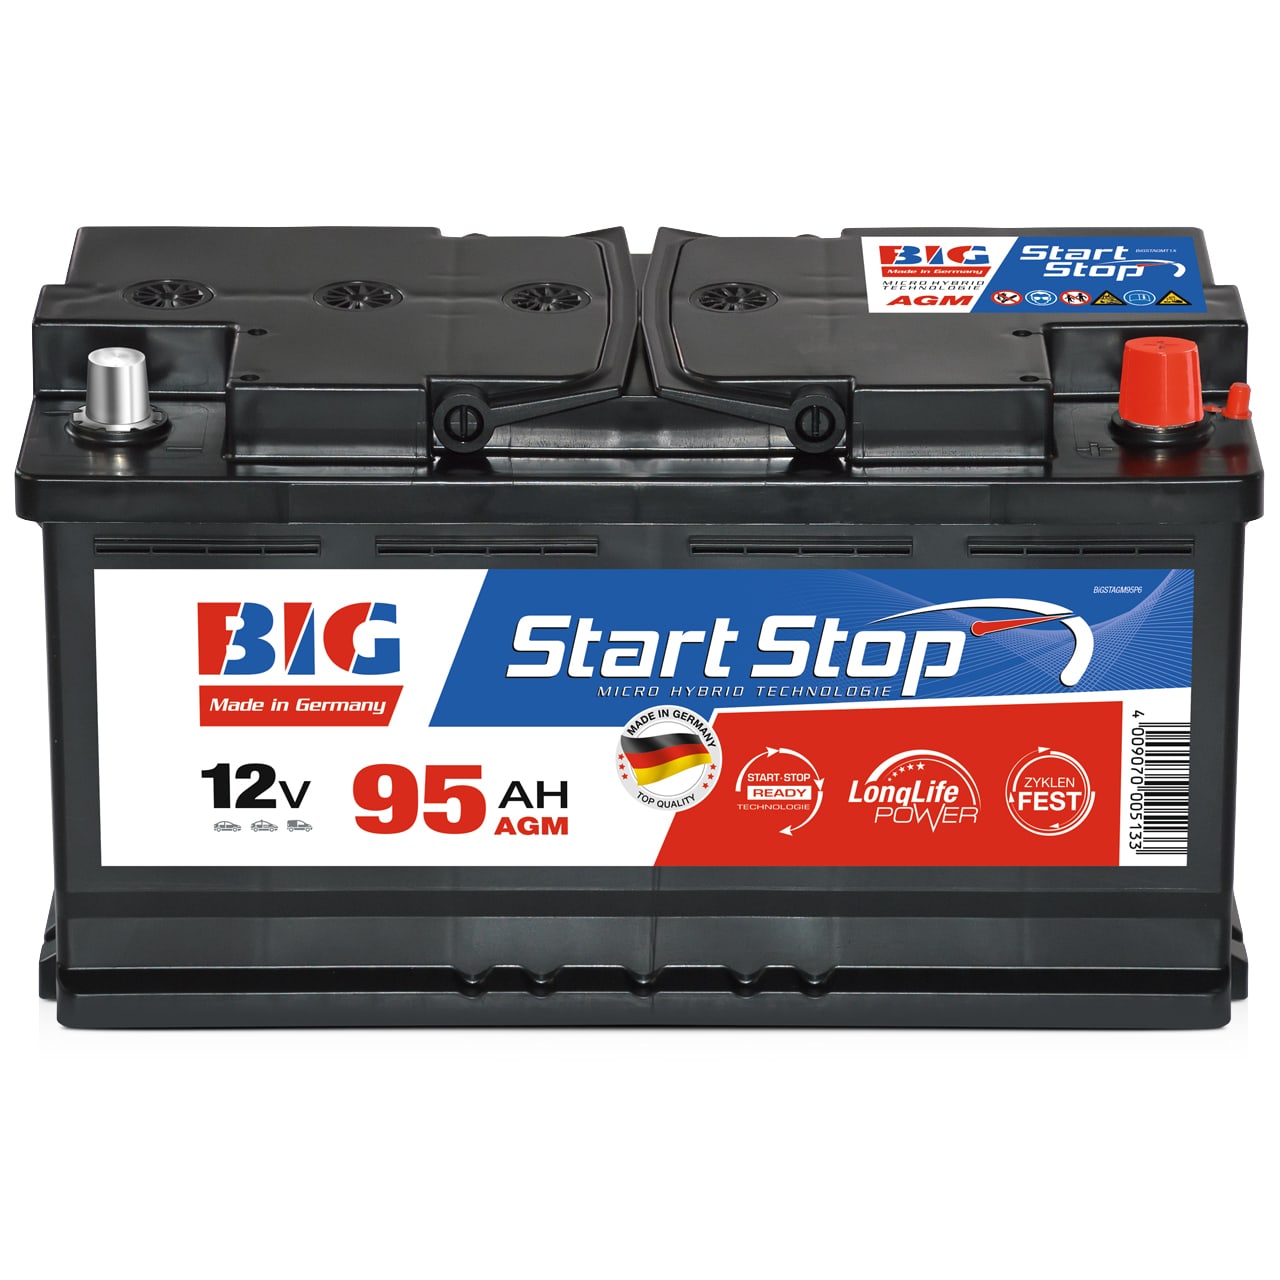 Batterie de voiture de l'AGA avec Start Stop 95 Ah - Mutlu® - Rabais de 20%